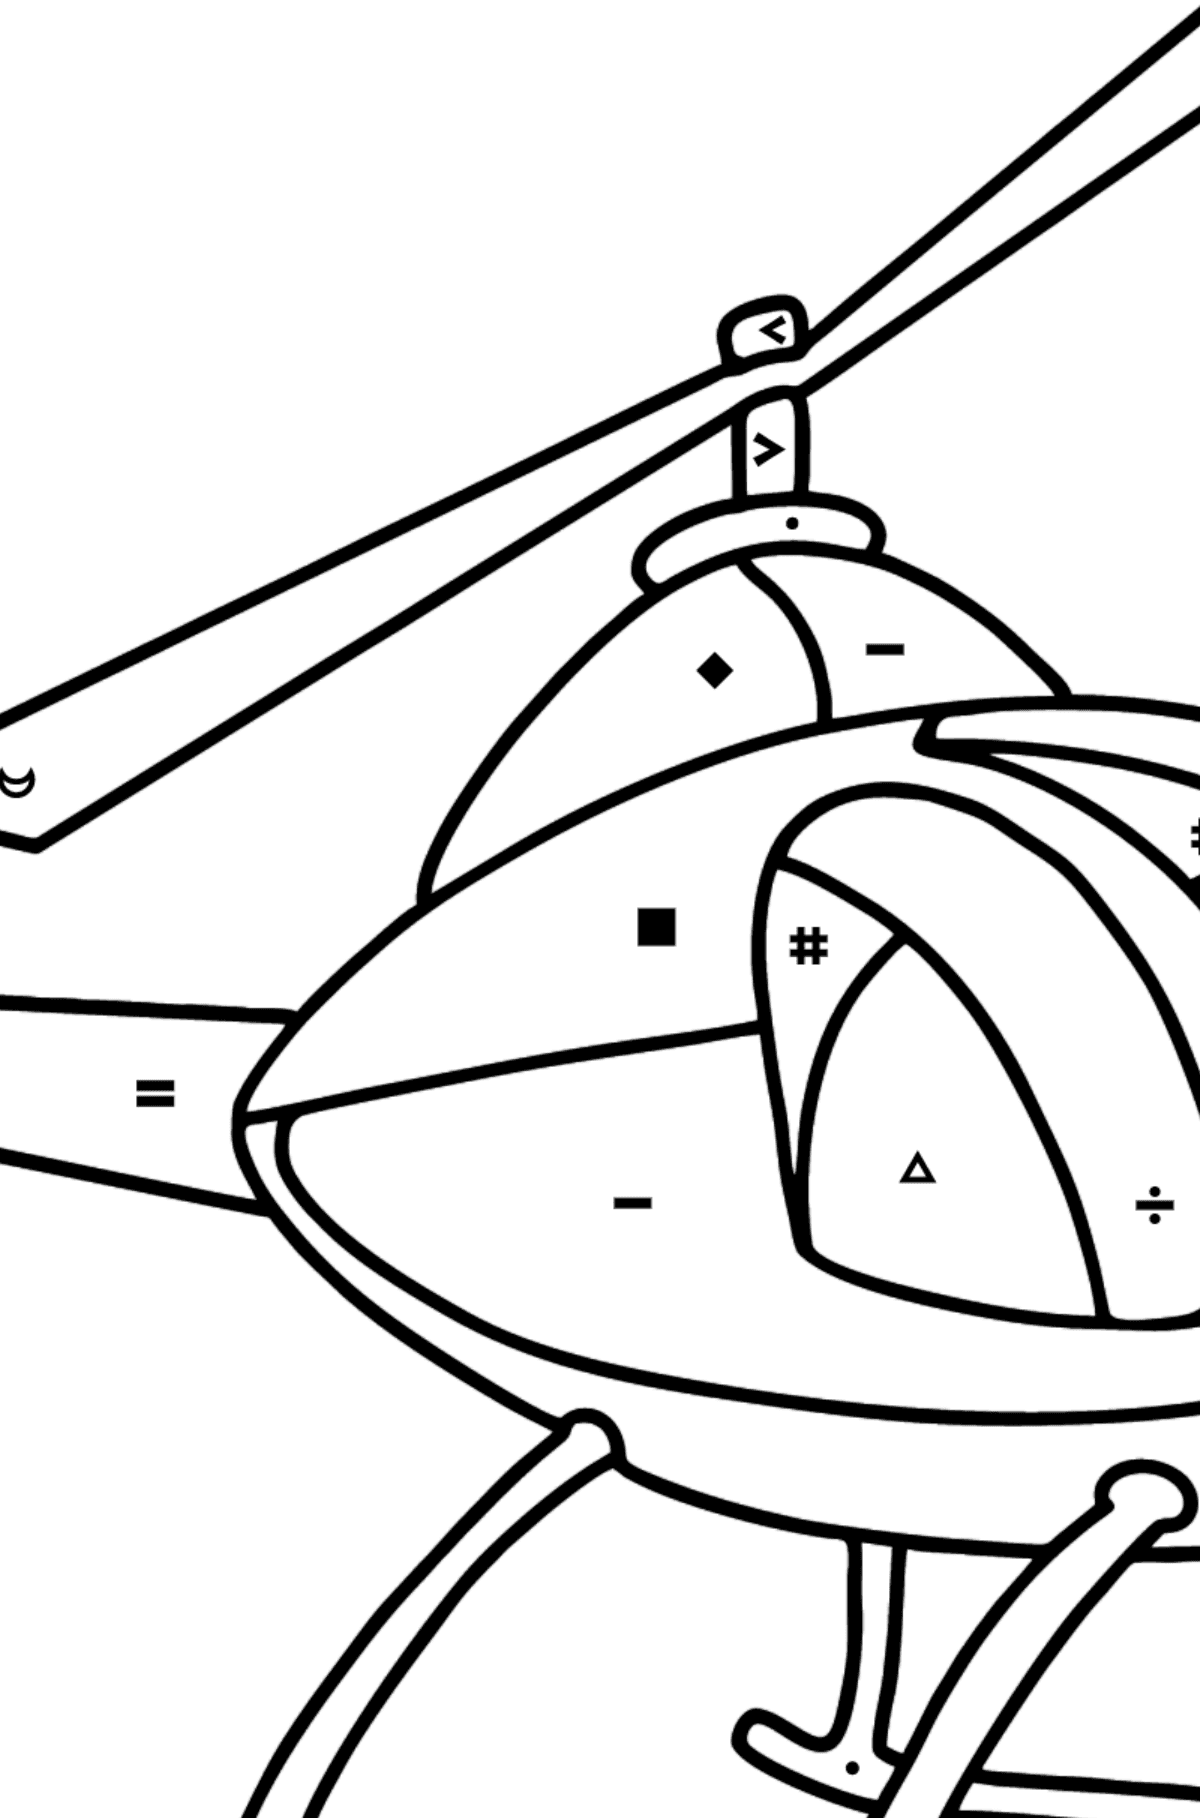 Página para colorear de helicópteros para niños - Colorear por Símbolos para Niños